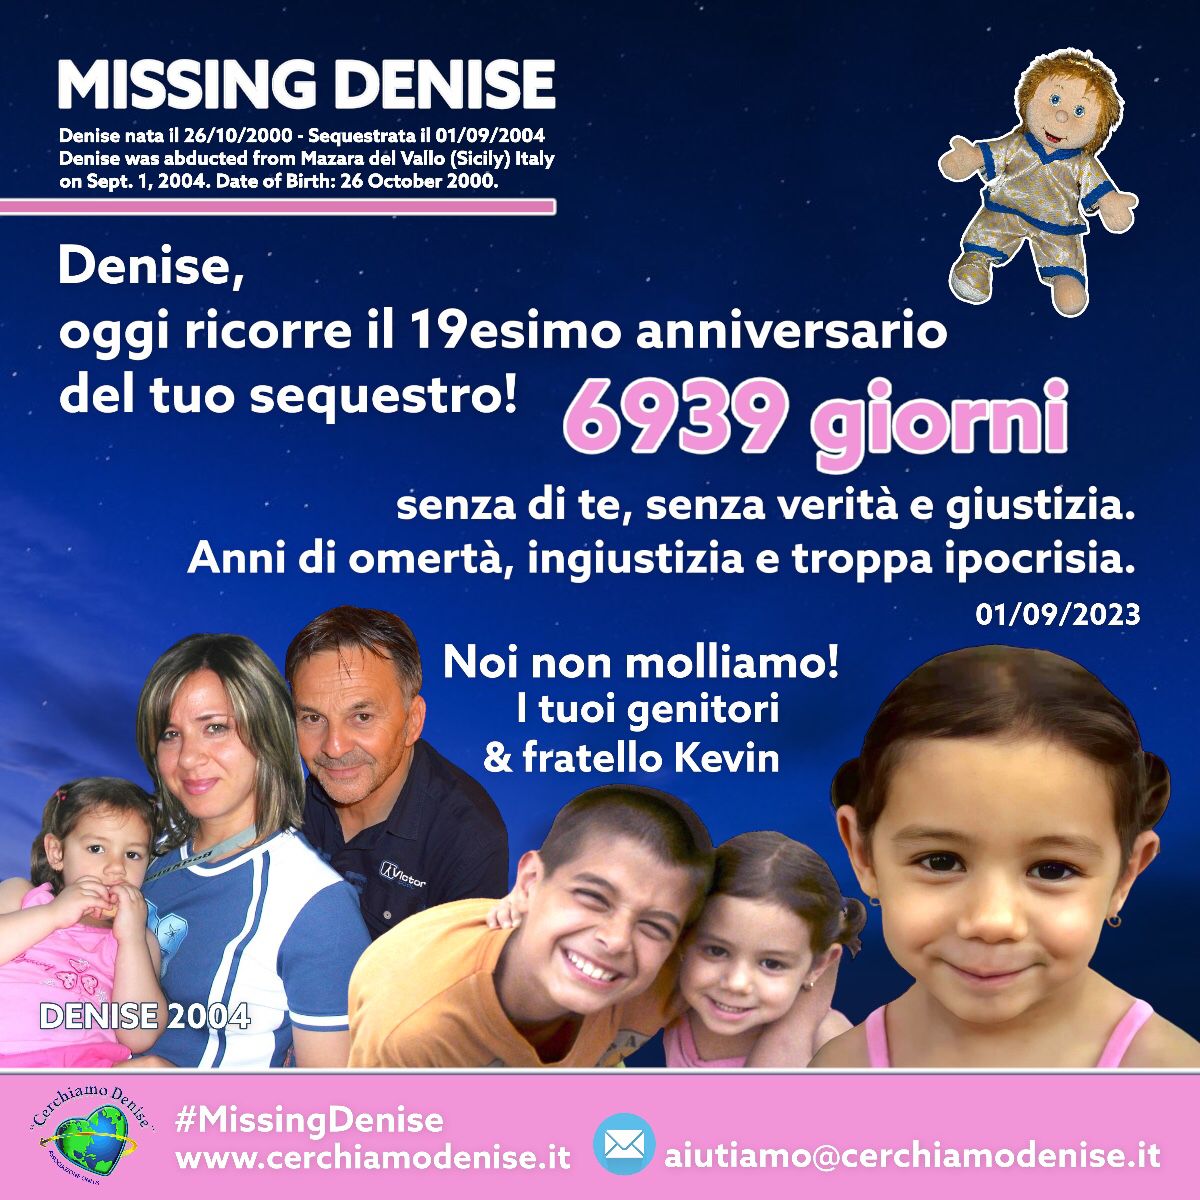 #MissingDenise 01/09/2004 - 2023

🎀#NoiNonMolliamo
La tua famiglia che più ti ama tanto! ❤

cerchiamodenise.it 

#Missing #CerchiamoDenise #Anniversario #Tristezza #19AnniSenzaDenise #Famiglia #MazaraDelVallo #Sicilia #Italia #Europa #PopoloDiDenise
m.facebook.com/story.php?stor…